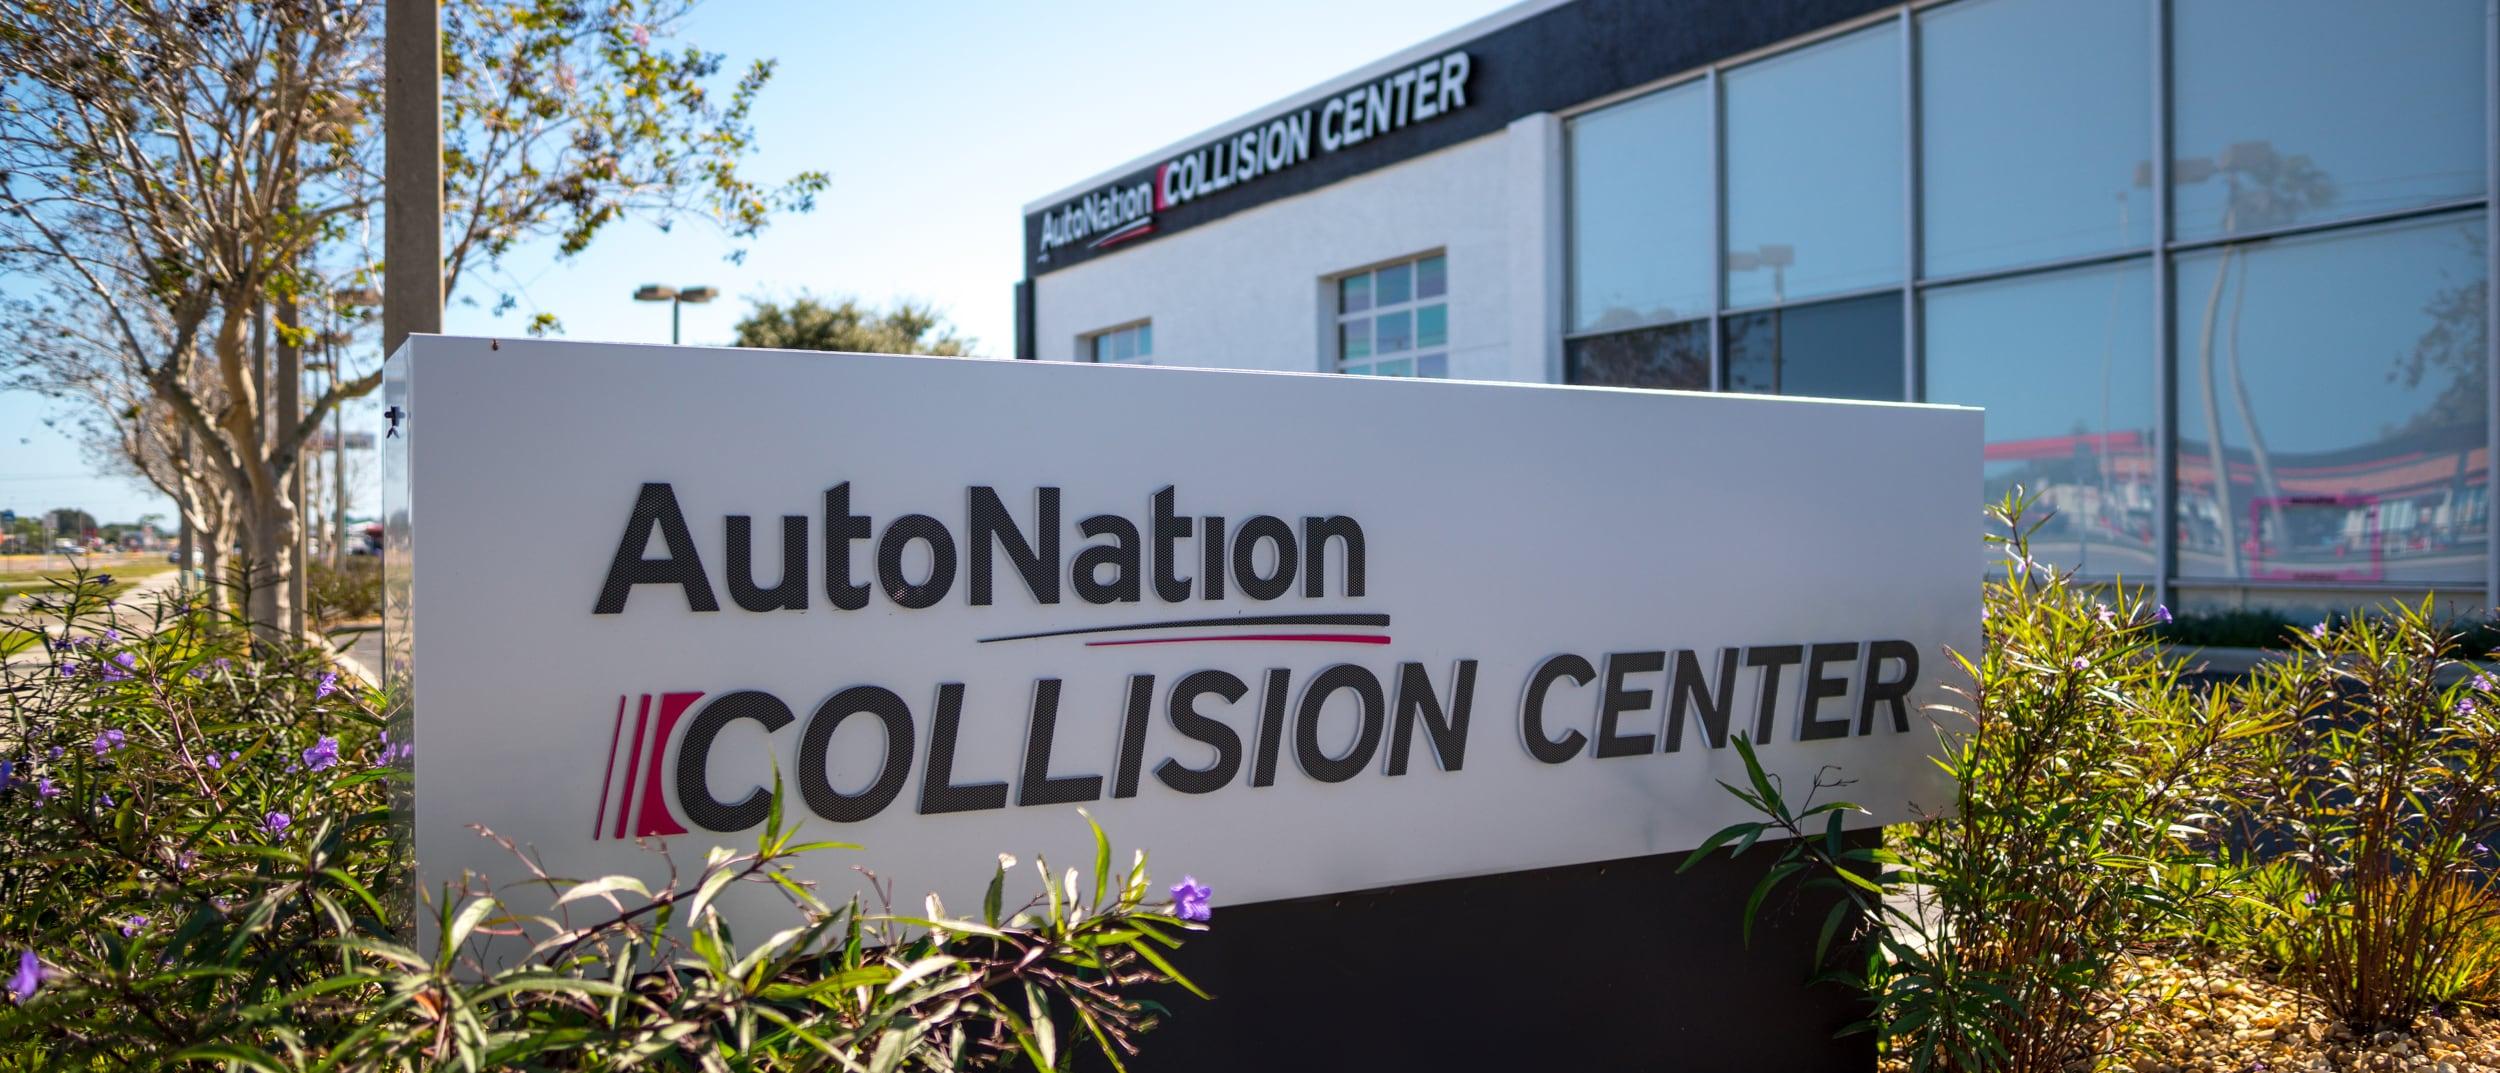 AutoNation Collision Center West Palm Beach